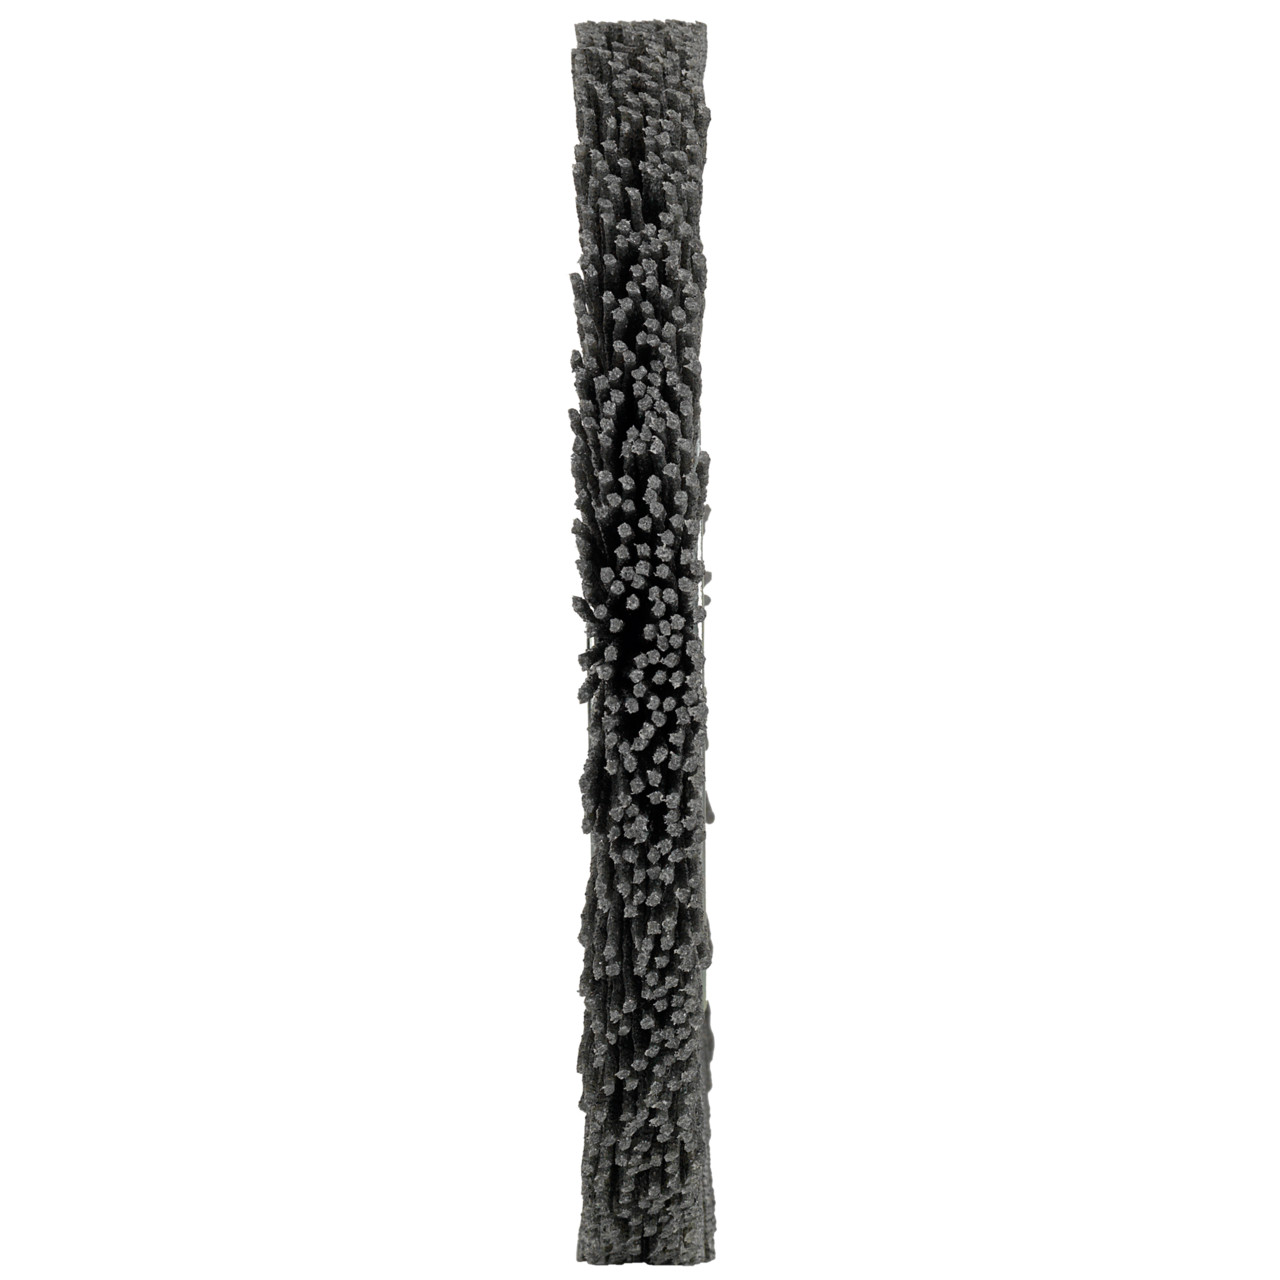 Tyrolit Round brushes DxWxLxH 150x15x29x40 For universal use, shape: 1RDK - (round brushes), Art. 916720